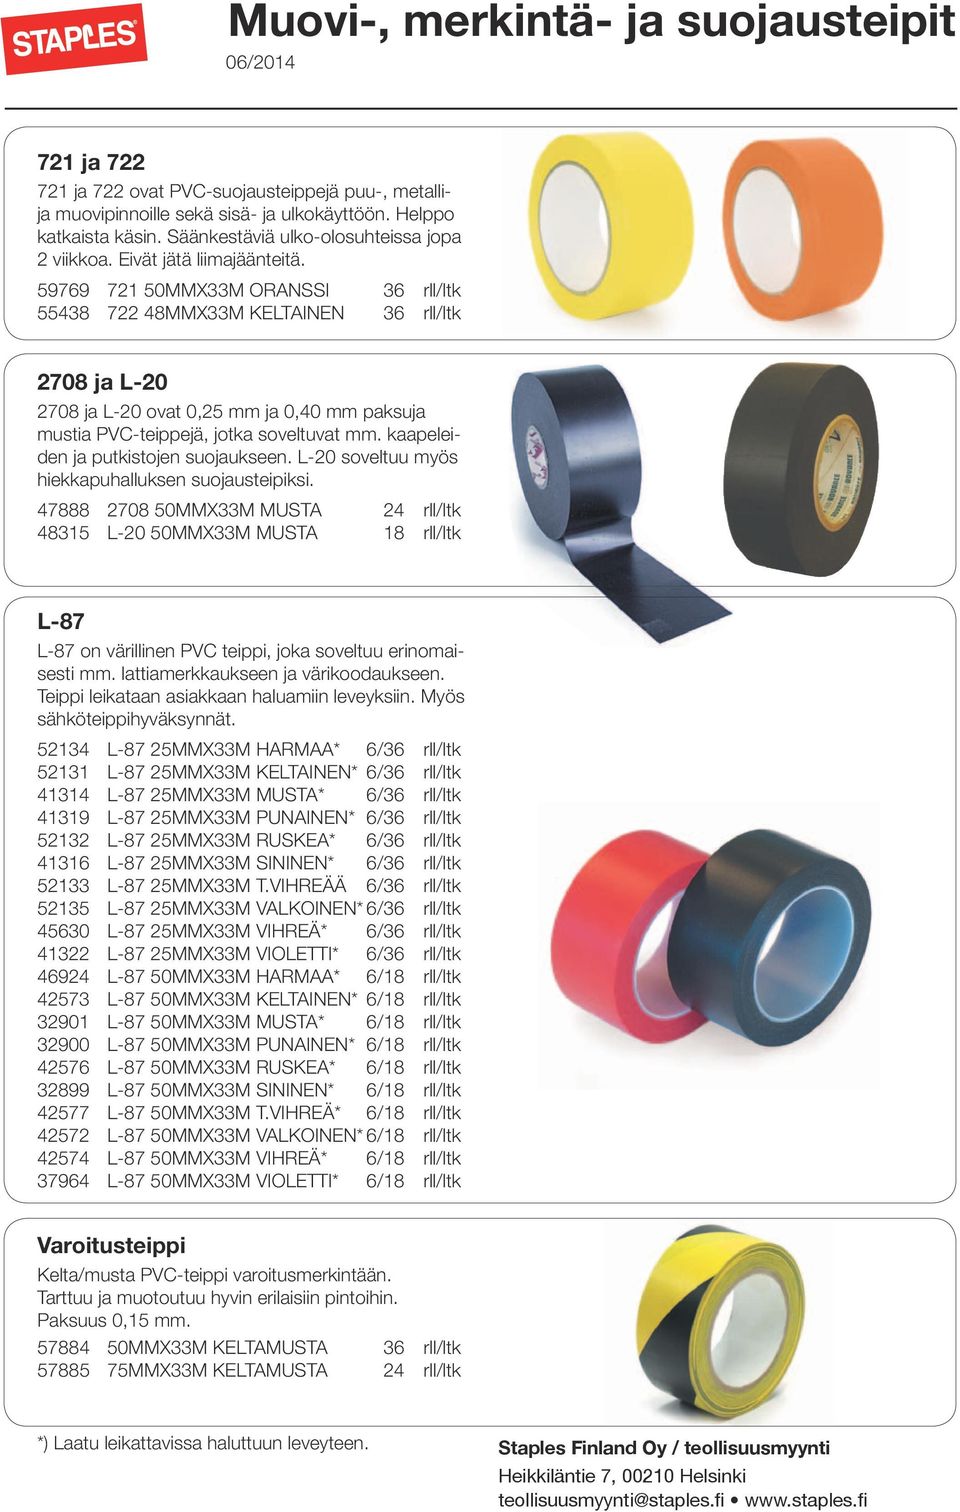 59769 721 50MMX33M ORANSSI 36 rll/ltk 55438 722 48MMX33M KELTAINEN 36 rll/ltk 2708 ja L-20 2708 ja L-20 ovat 0,25 mm ja 0,40 mm paksuja mustia PVC-teippejä, jotka soveltuvat mm.